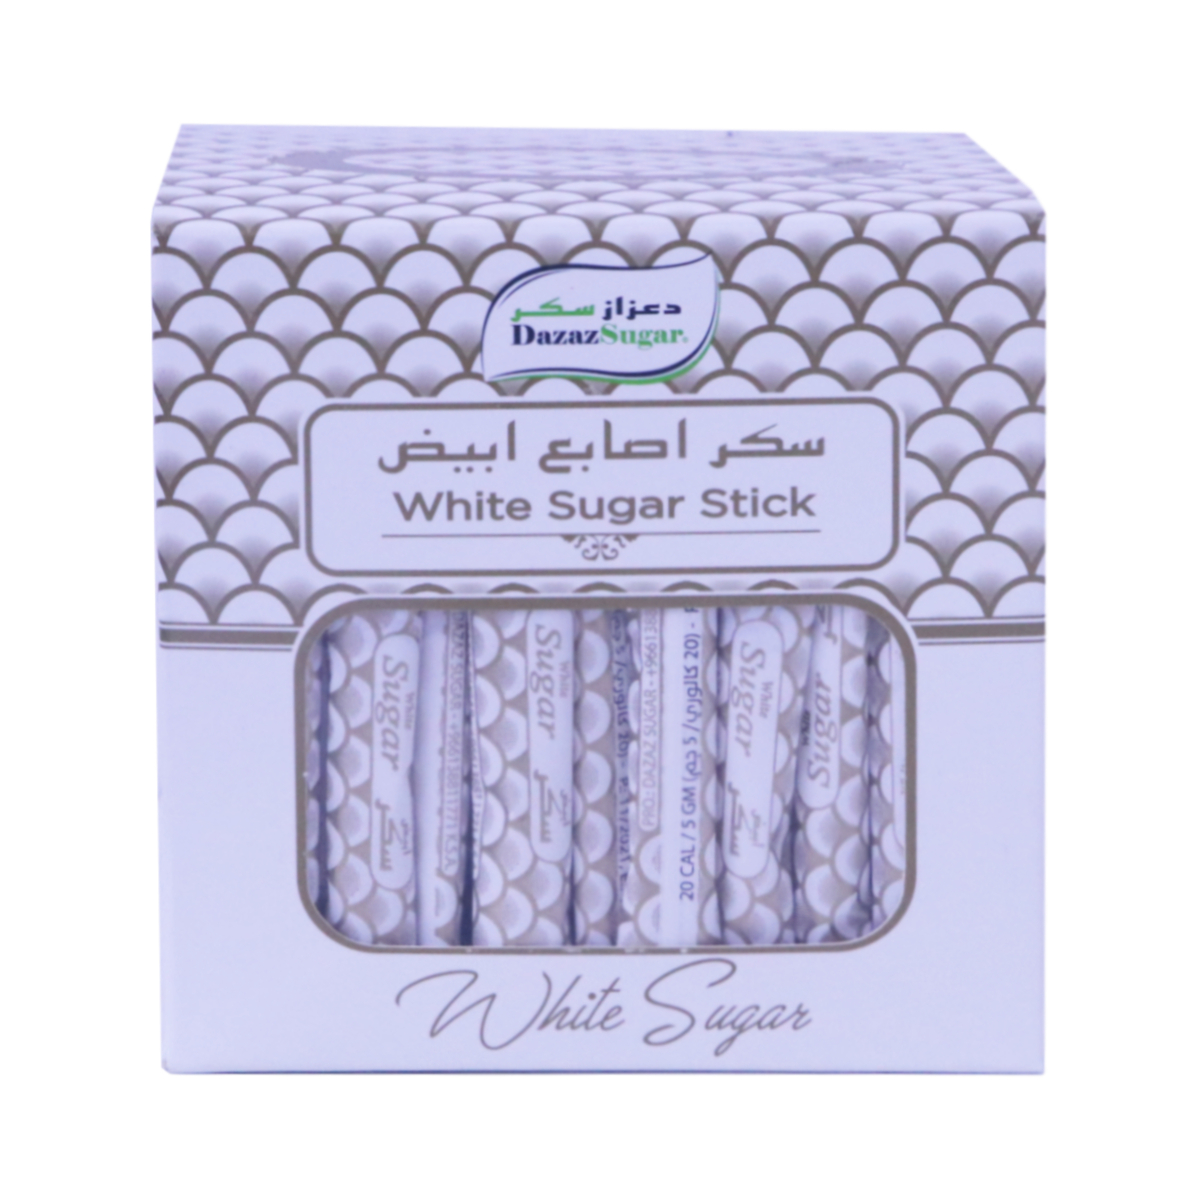 Buy Dazaz Sugar White Sugar Stick 500 g Online at Best Price | White Sugar | Lulu Kuwait in Saudi Arabia